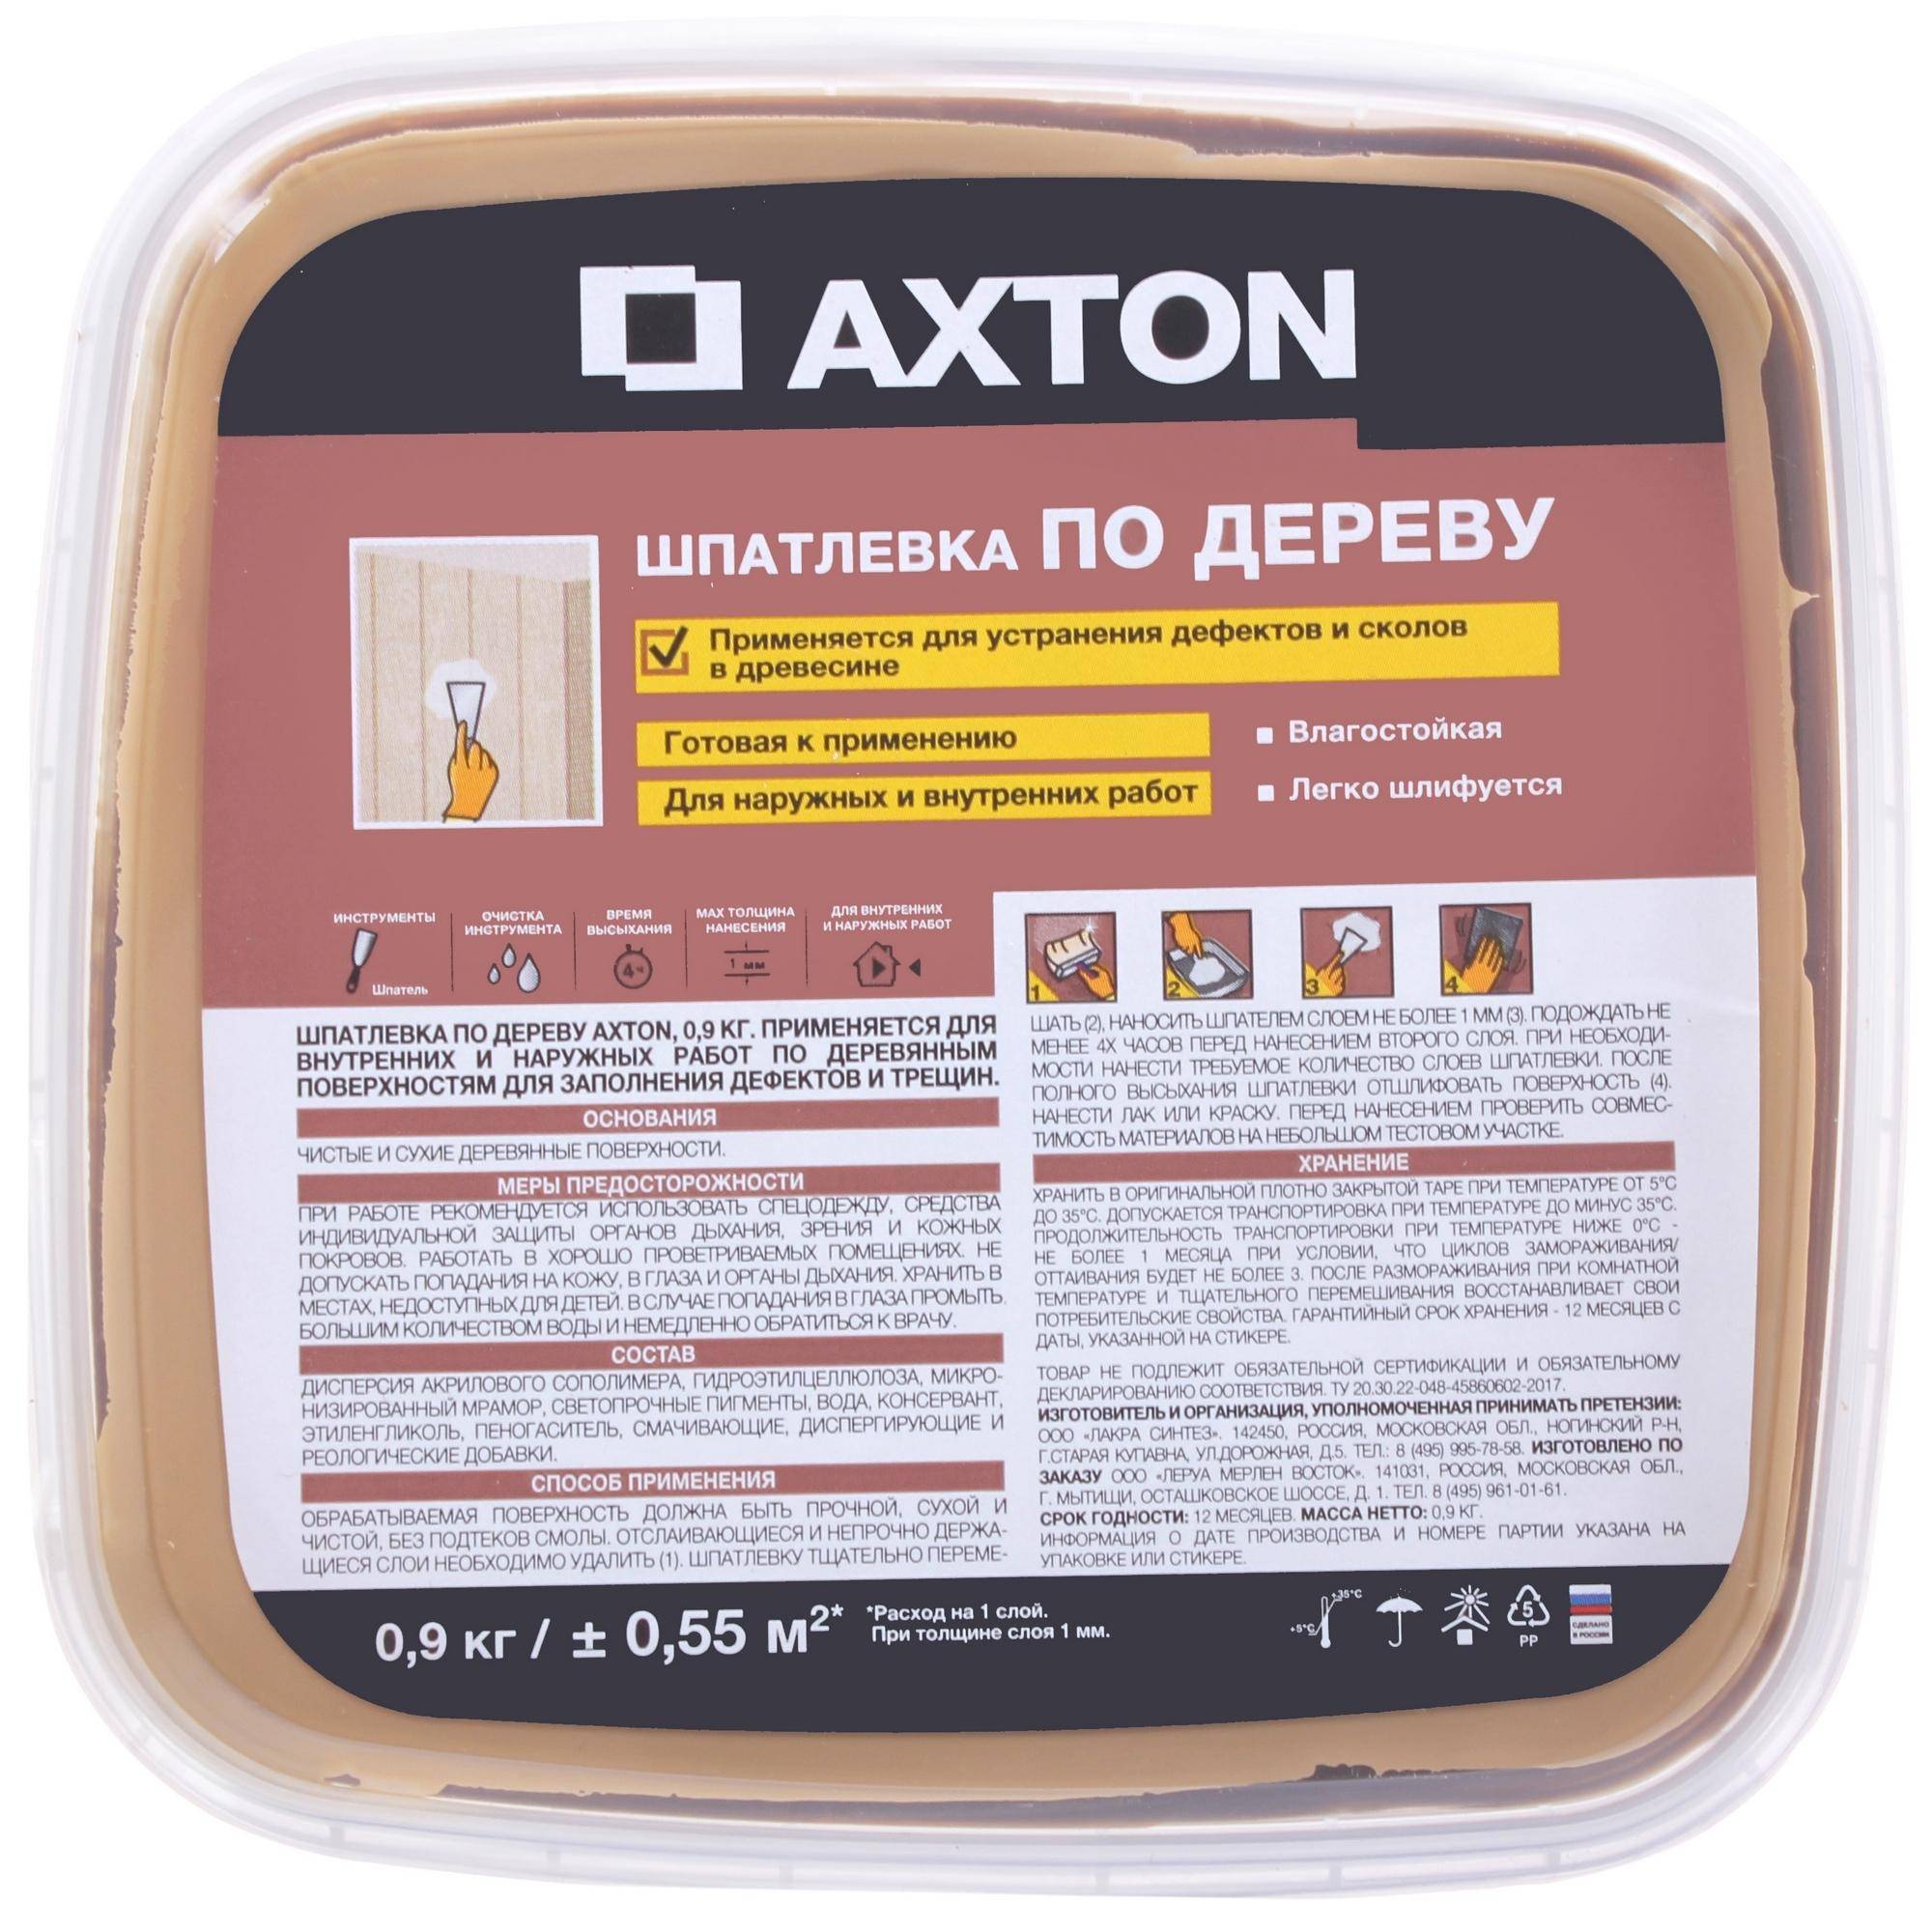 Наливной финишный пол axton отзывы – отзывы о наливных полах axton (акстон) всех видов